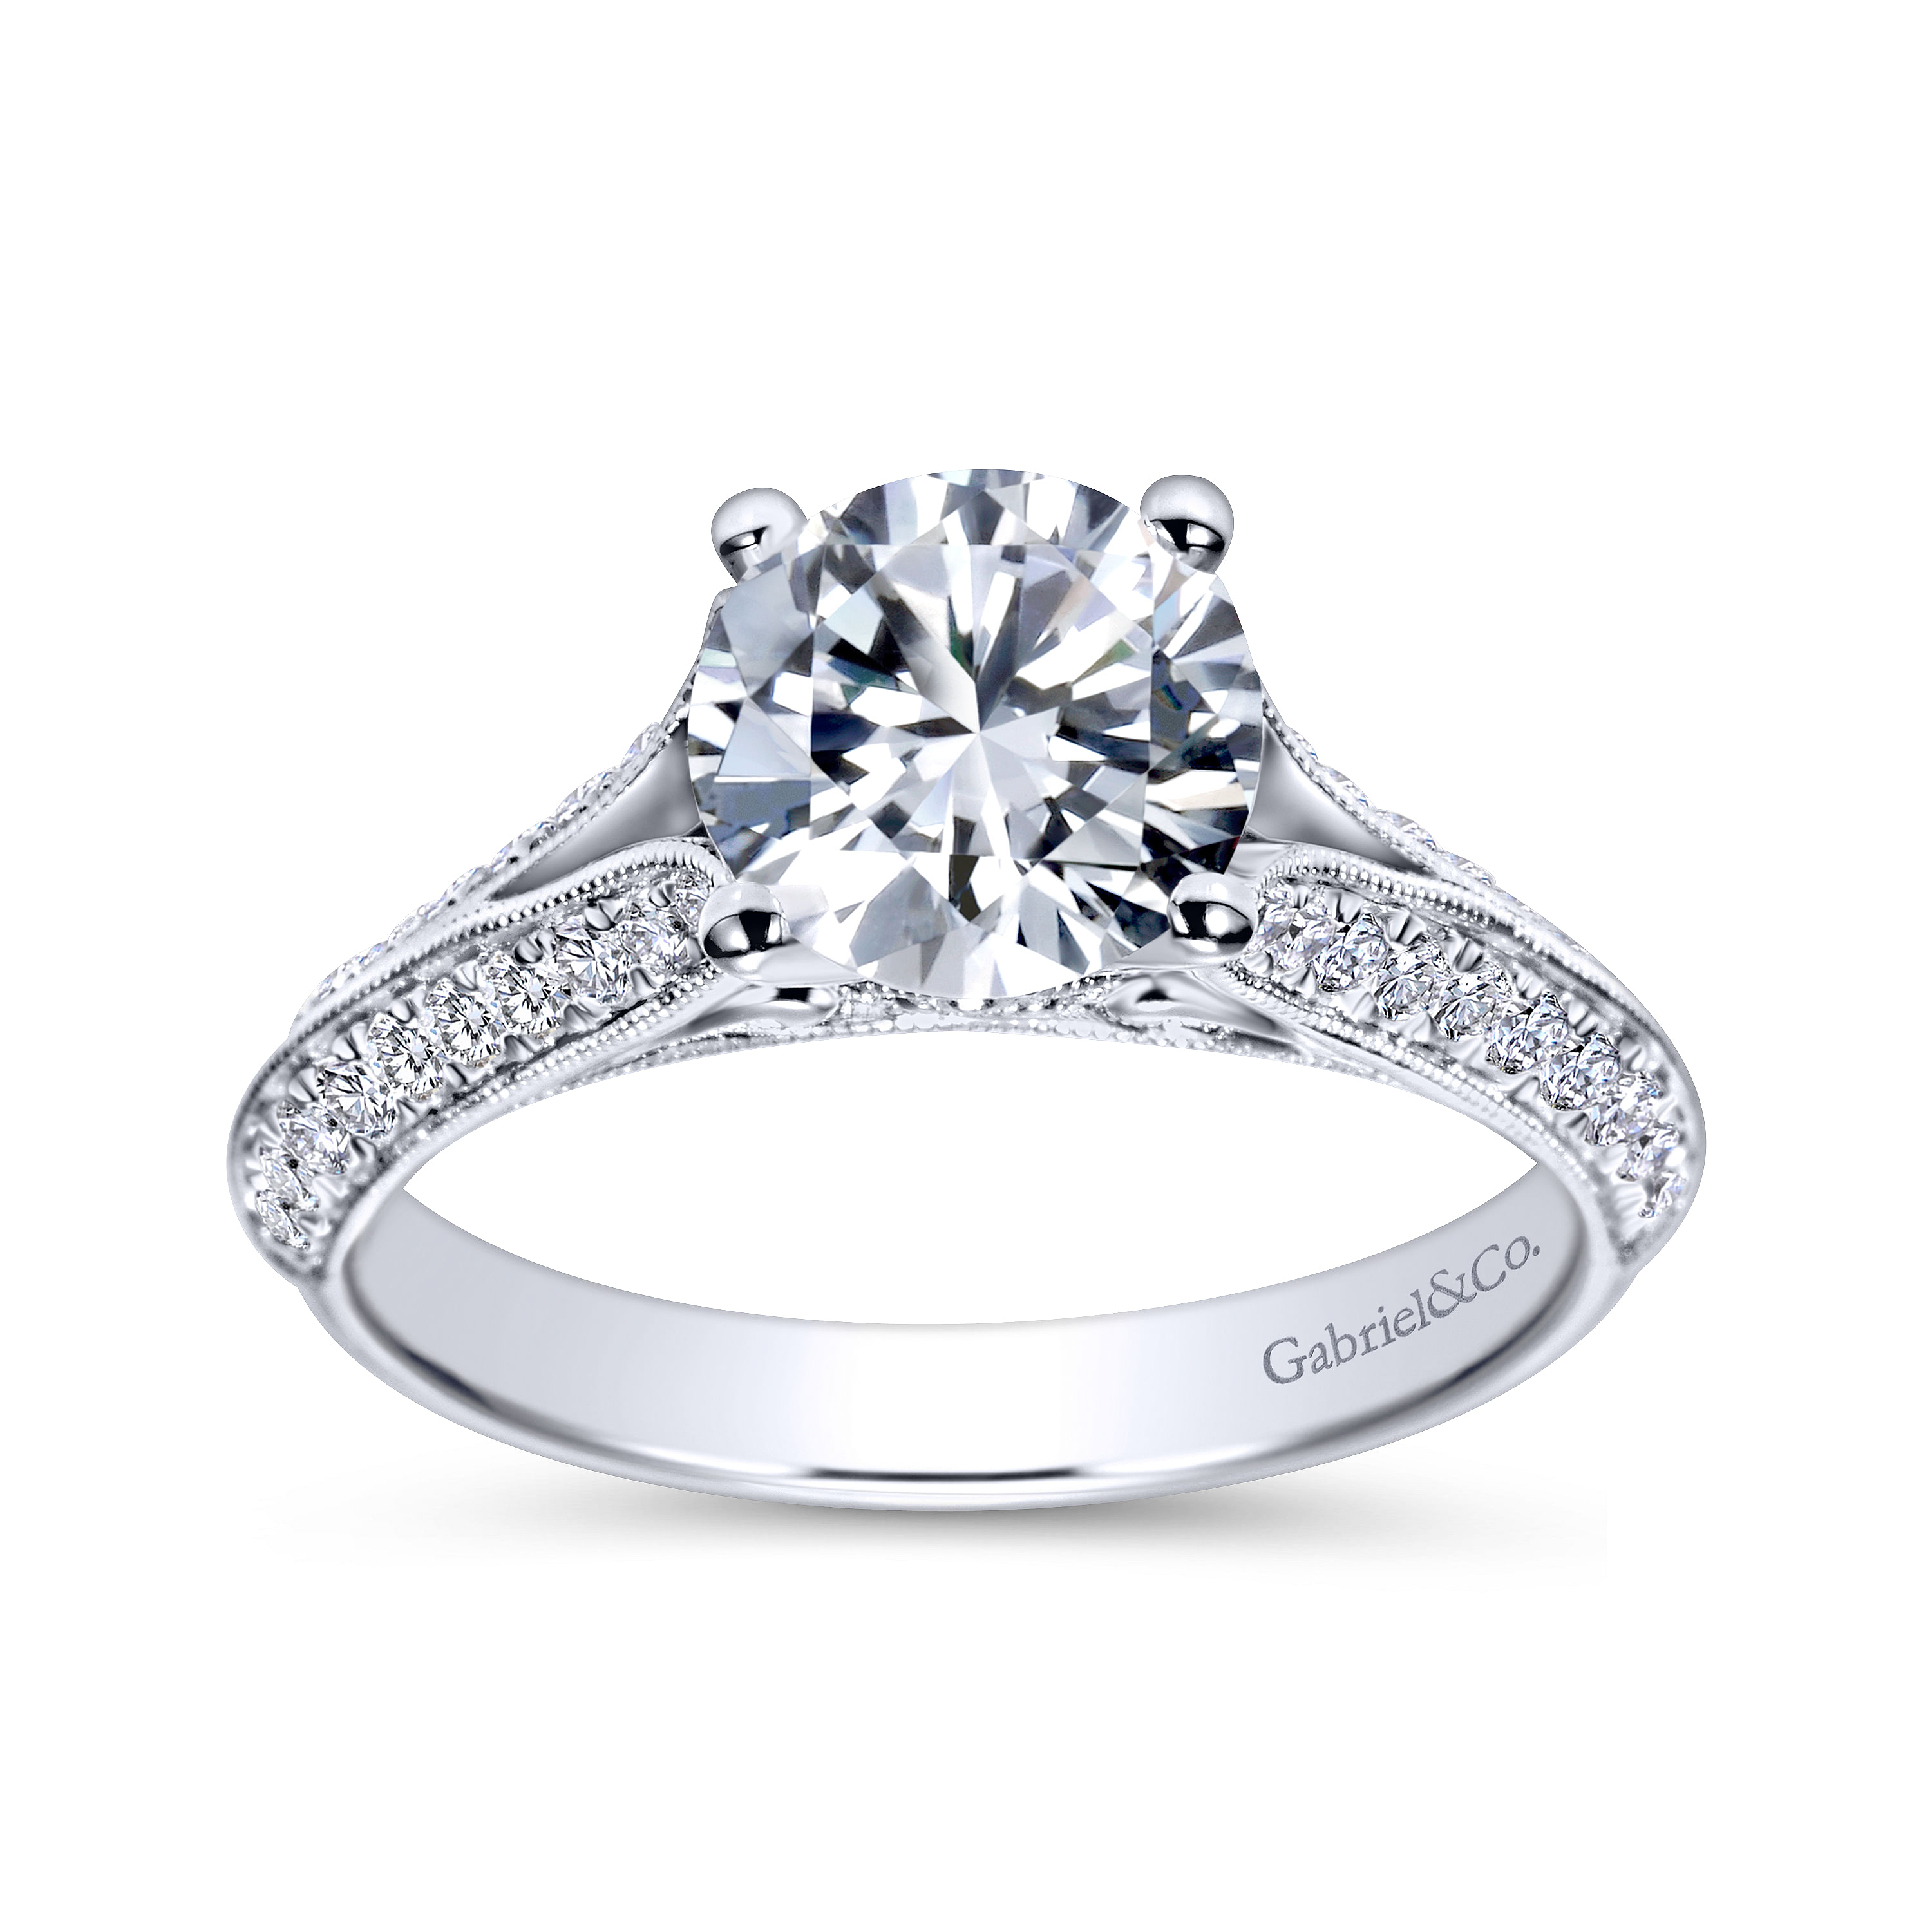 Vintage Inspired 14K White Gold Round Split Shank Diamond Engagement Ring